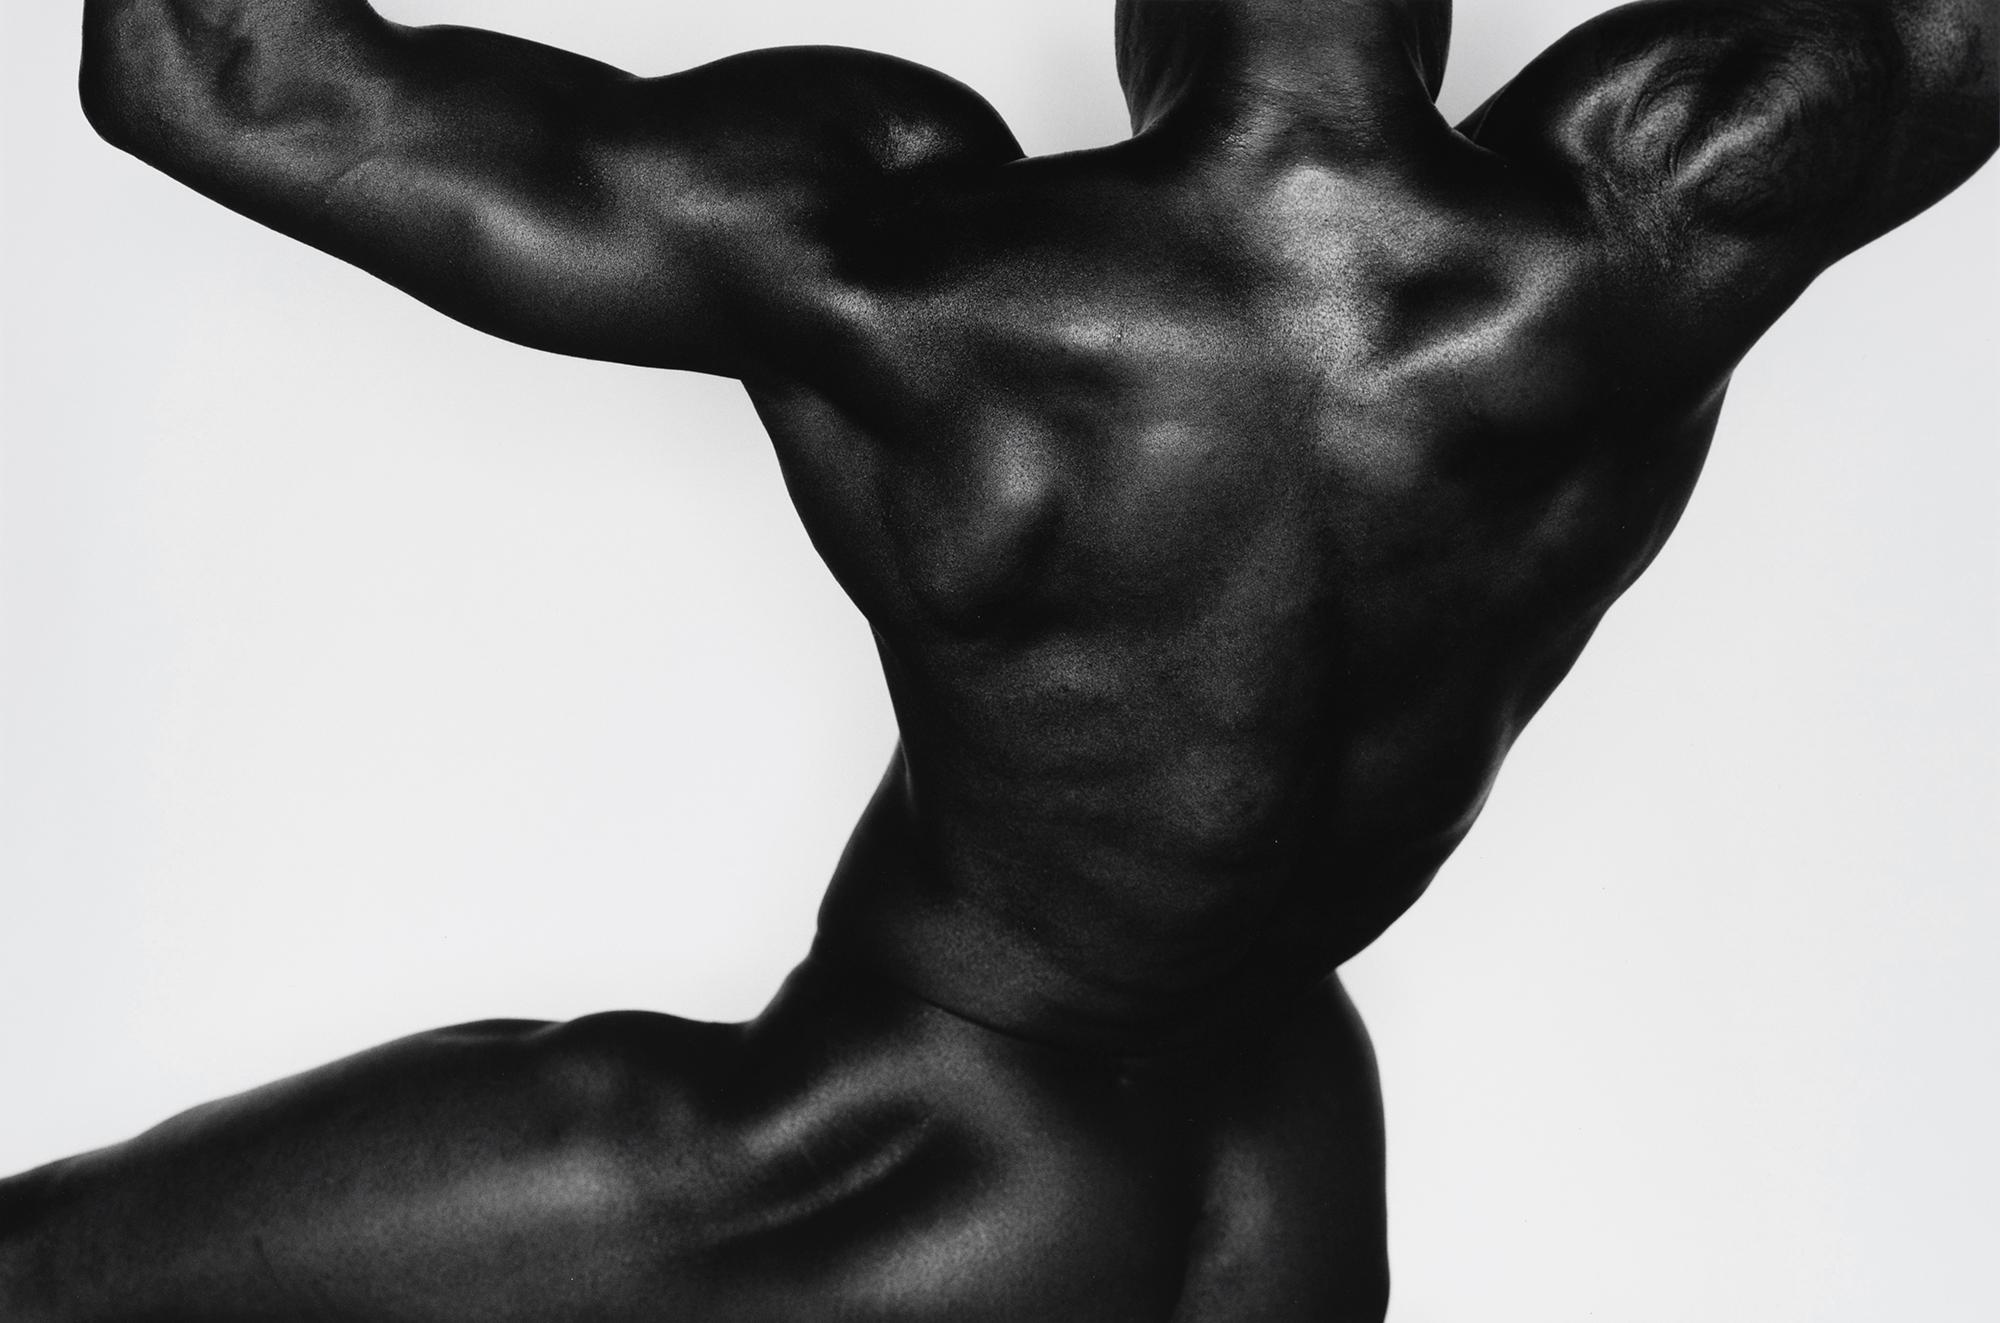 Untitled 20259 - silver gelatin print - male bodybuilder figure